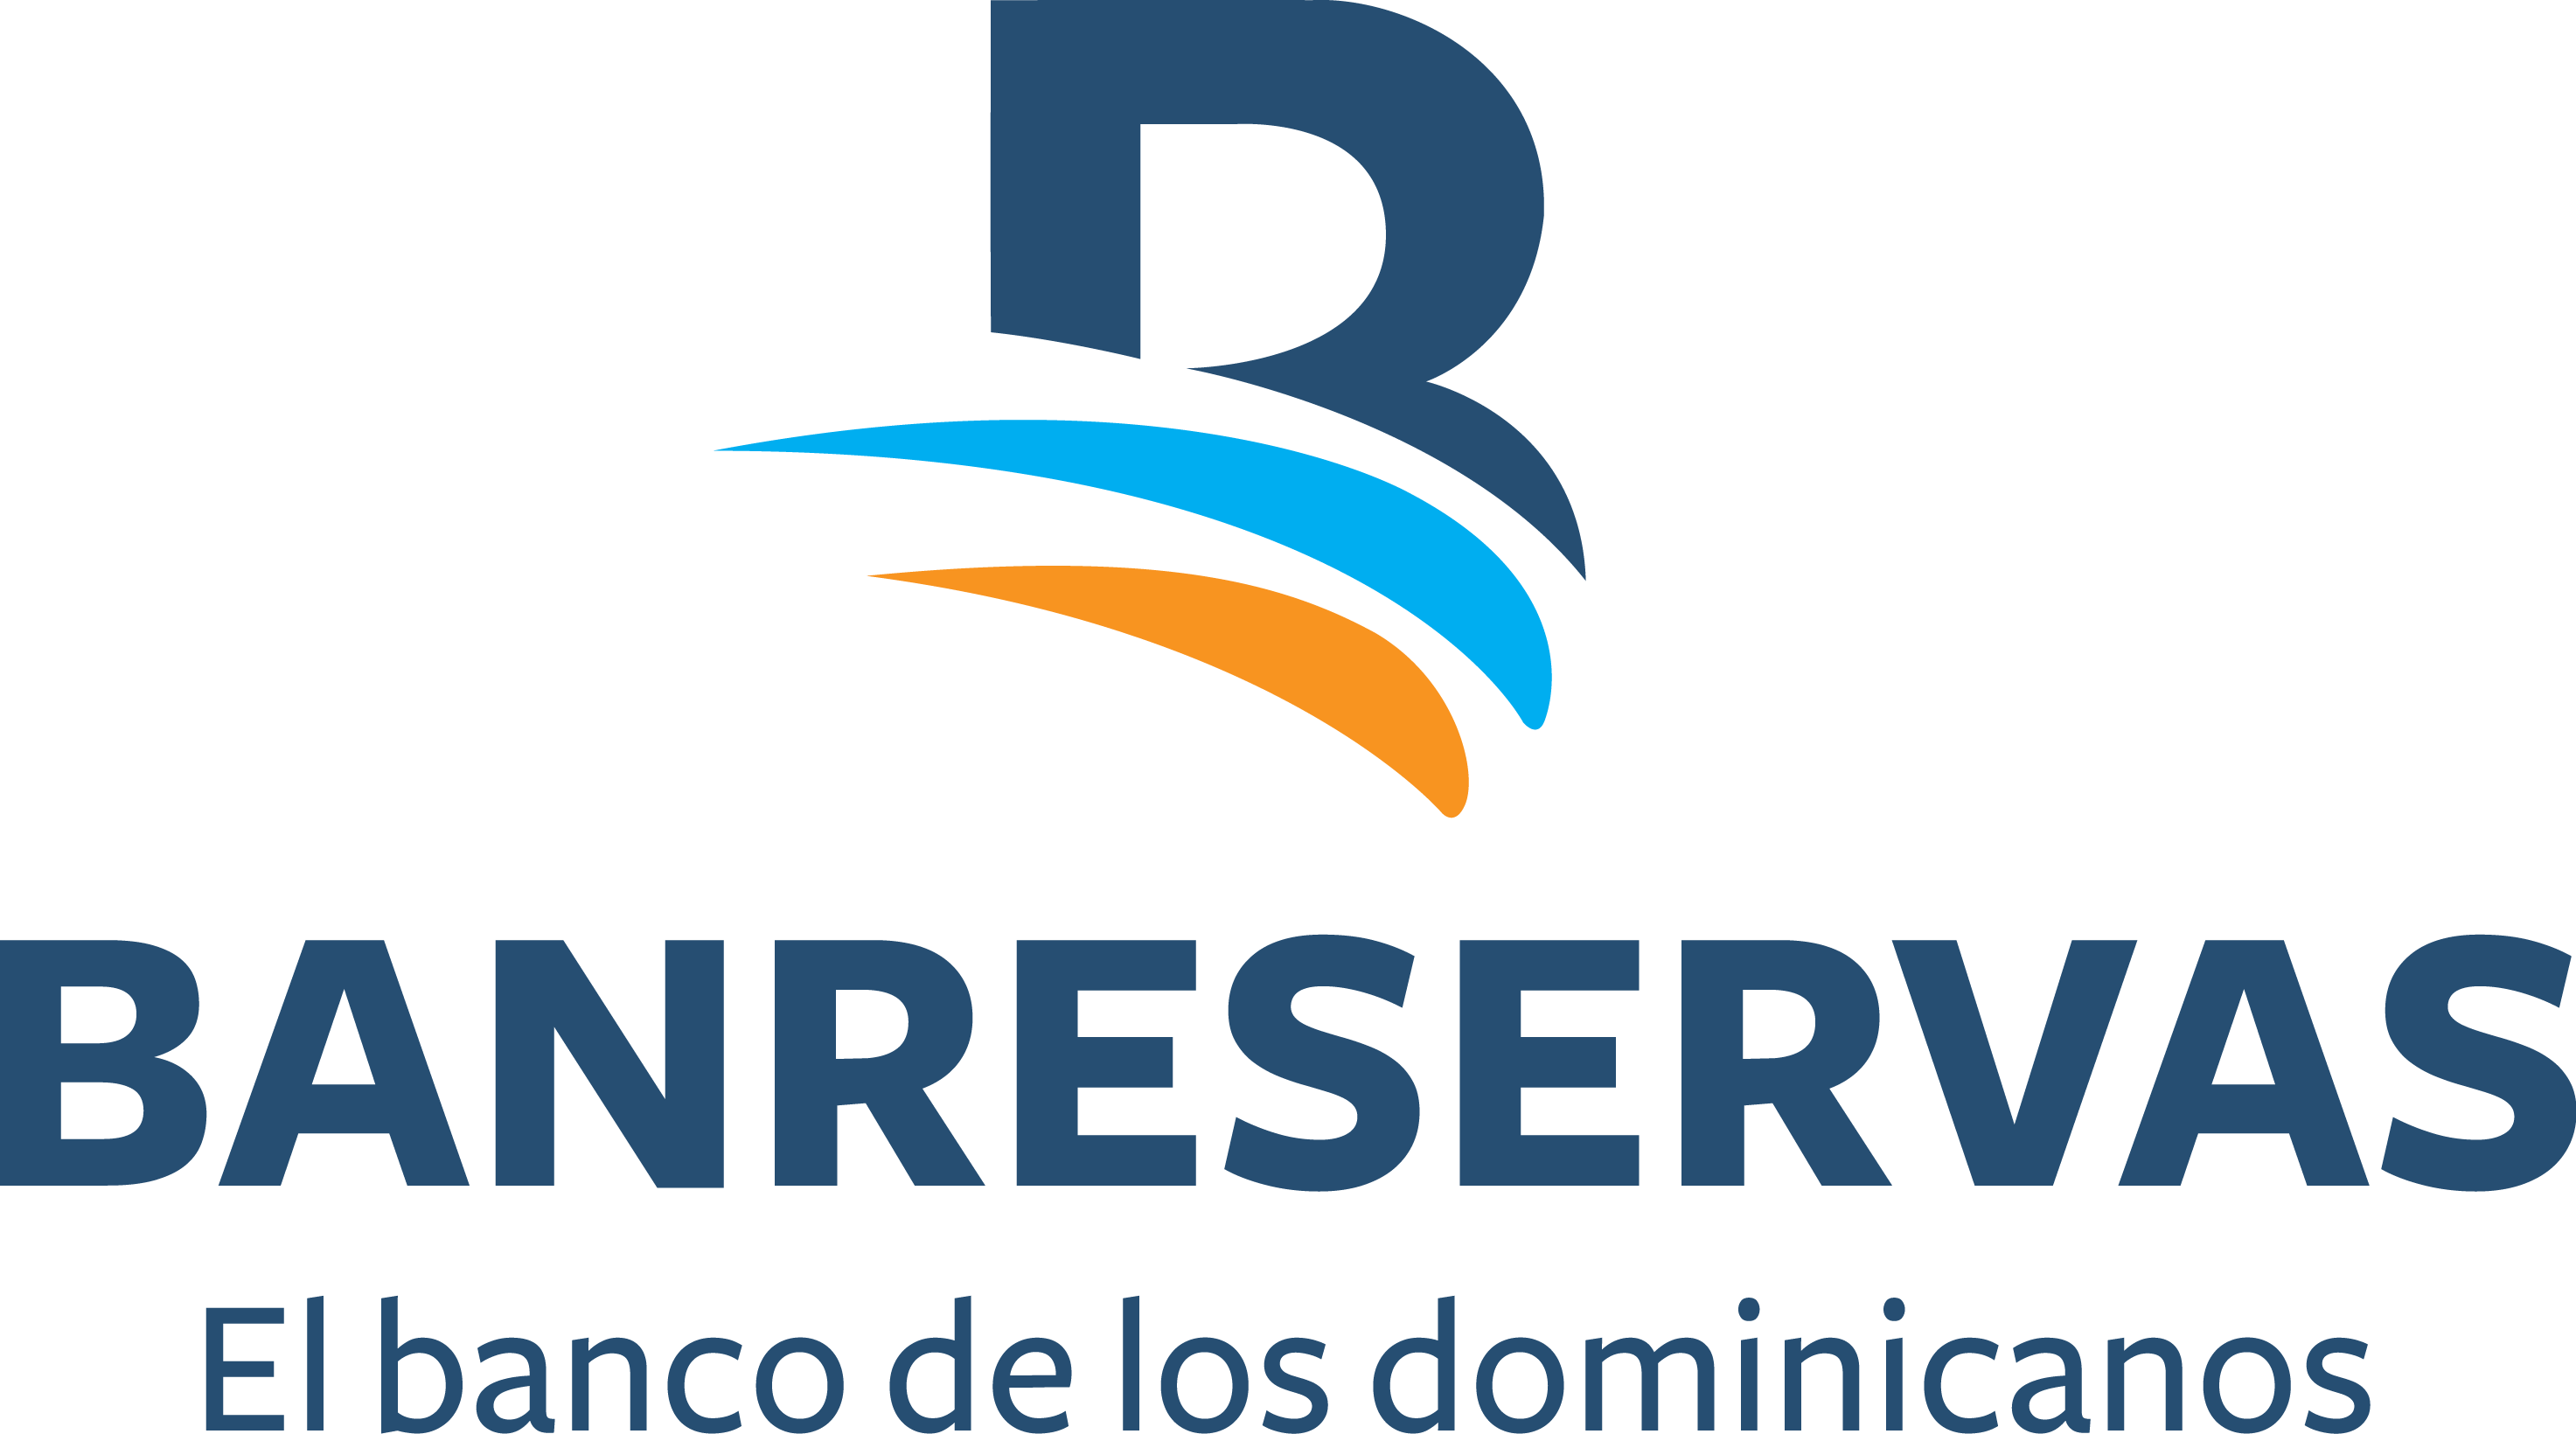 Logo Banreservas